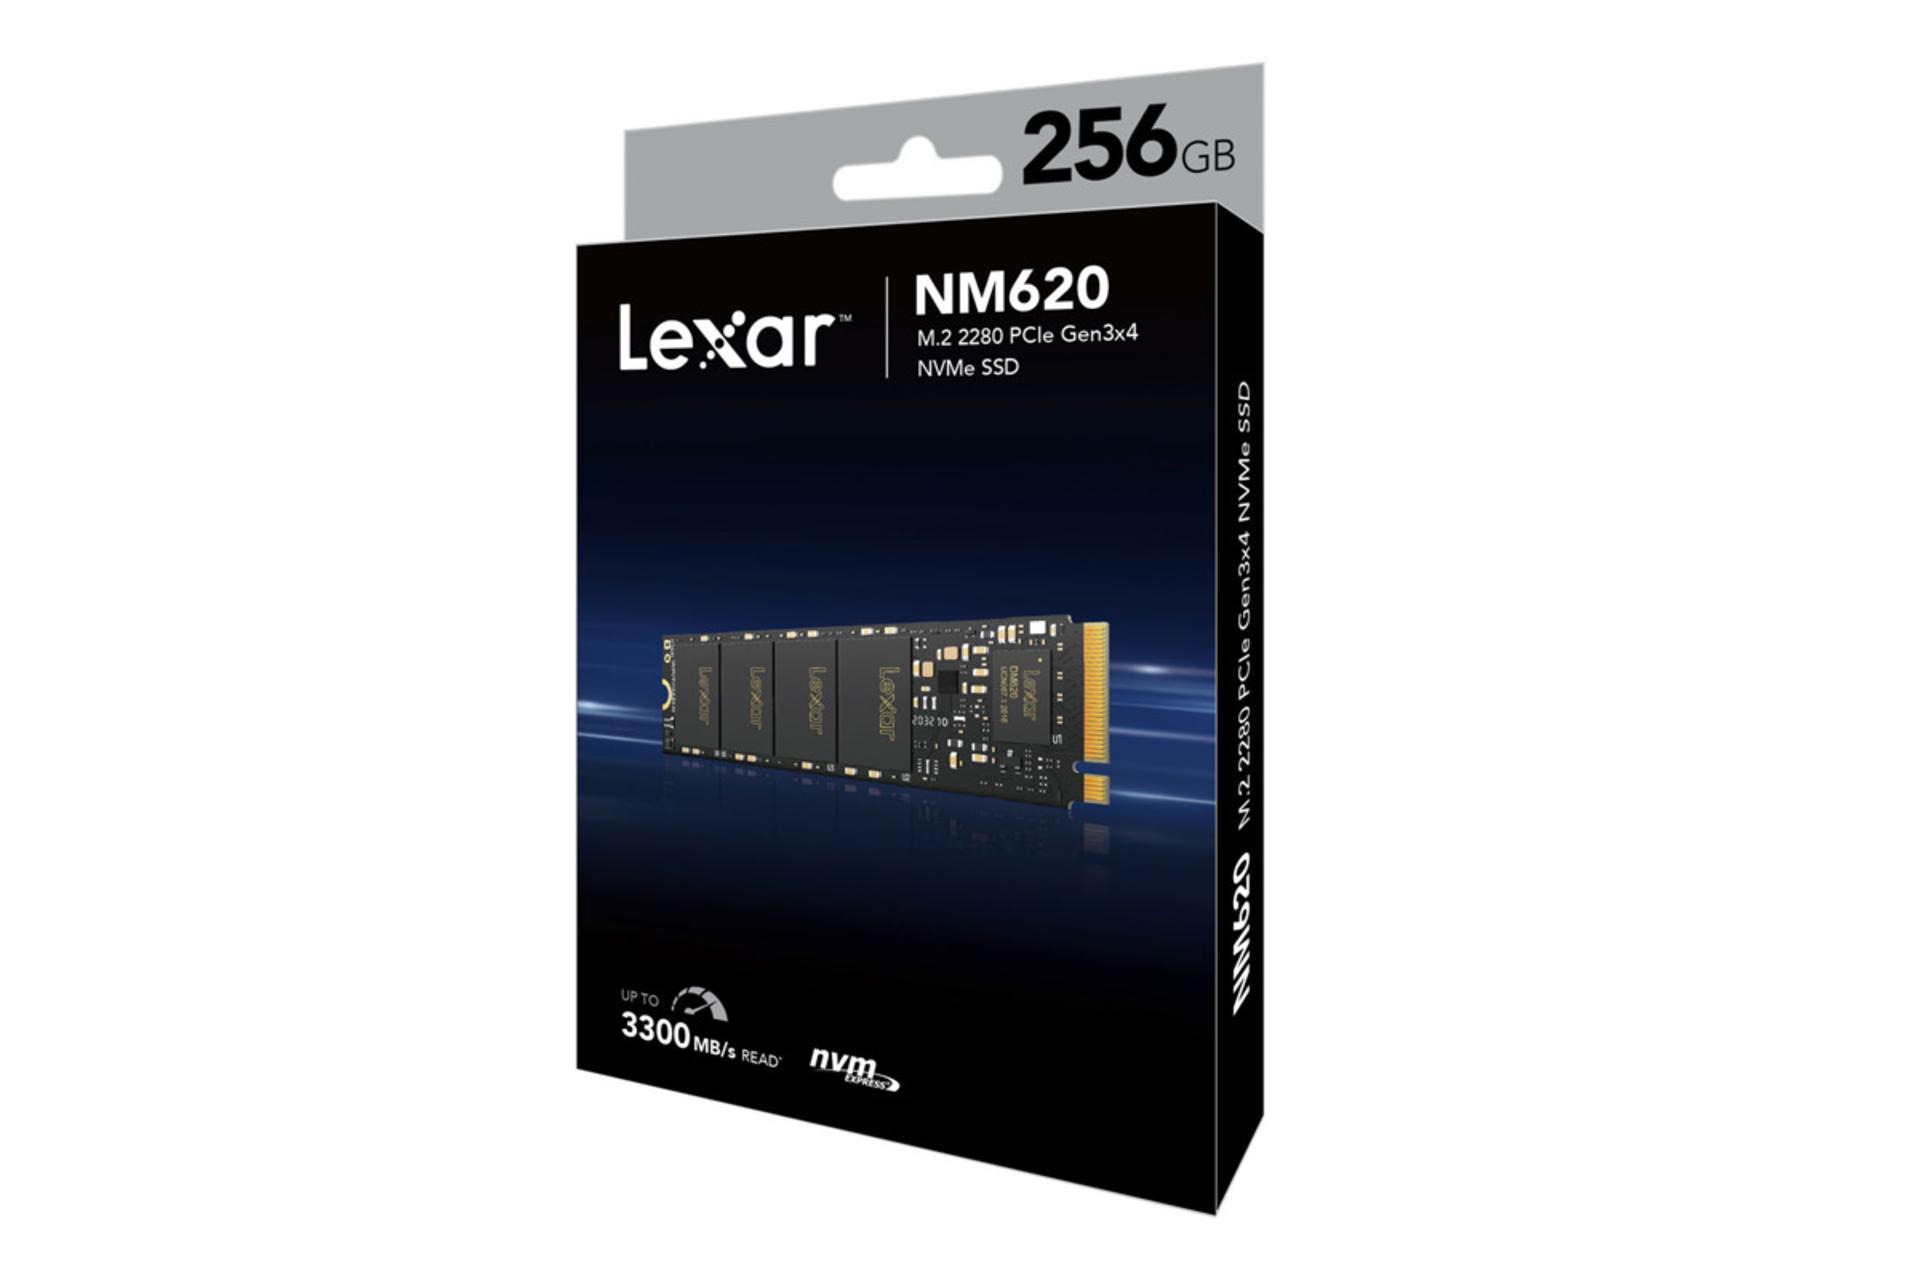 مرجع متخصصين ايران نماي جعبه SSD لكسار Lexar NM620 NVMe M.2 ظرفيت 256 گيگابايت